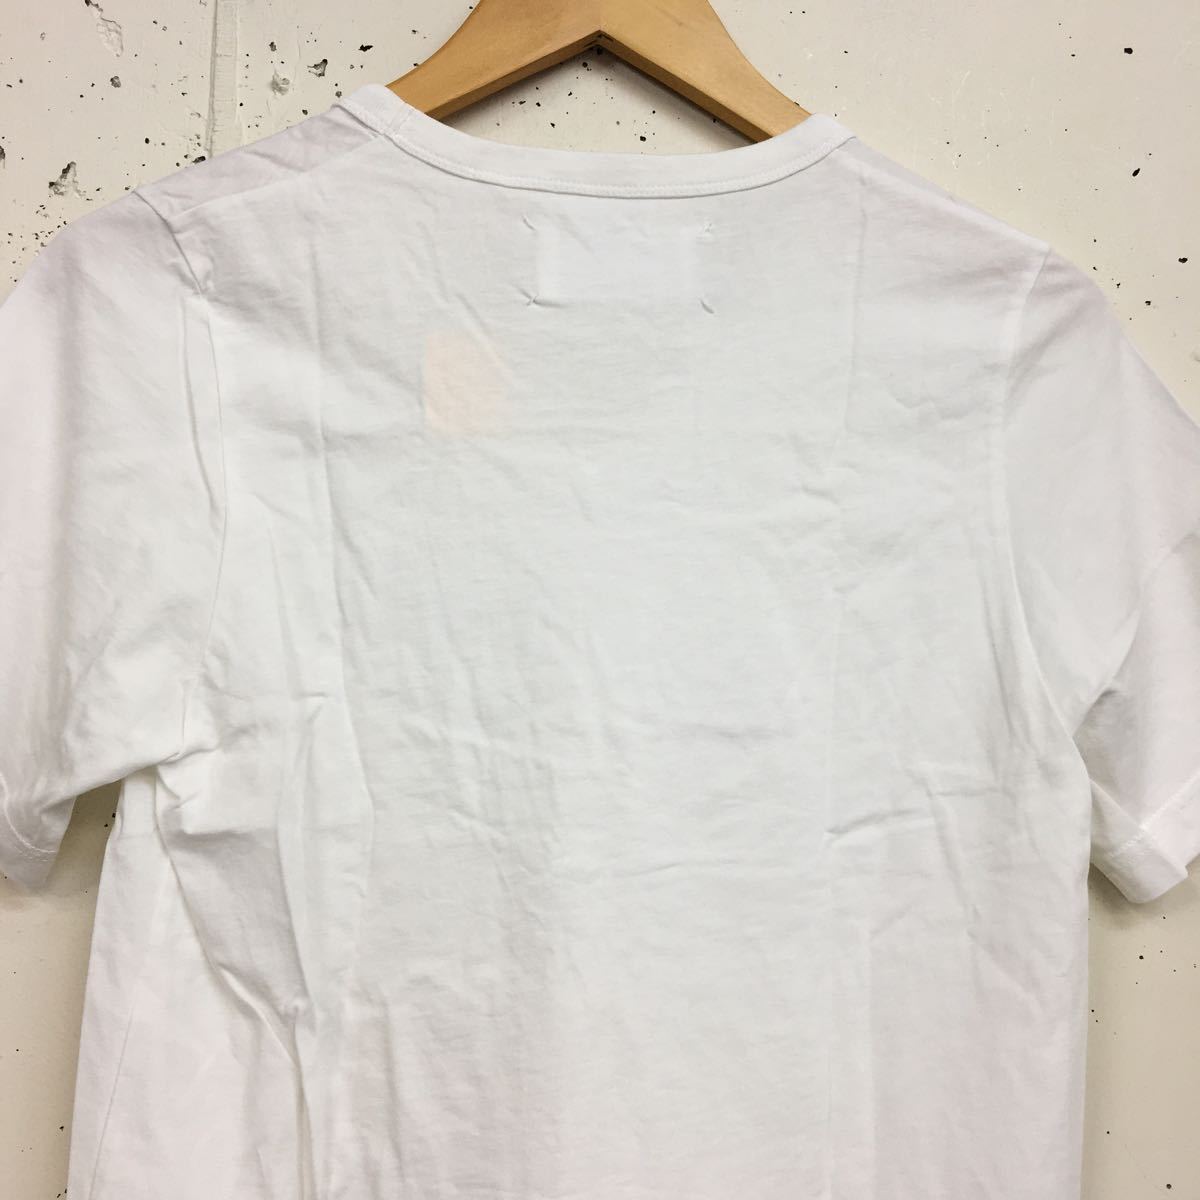 Martin Margiela メゾンマルジェラ ⑩ VネックTee オフホワイト 白 XSサイズ コットン tシャツ 半袖 無地 トップス カットソー の画像5